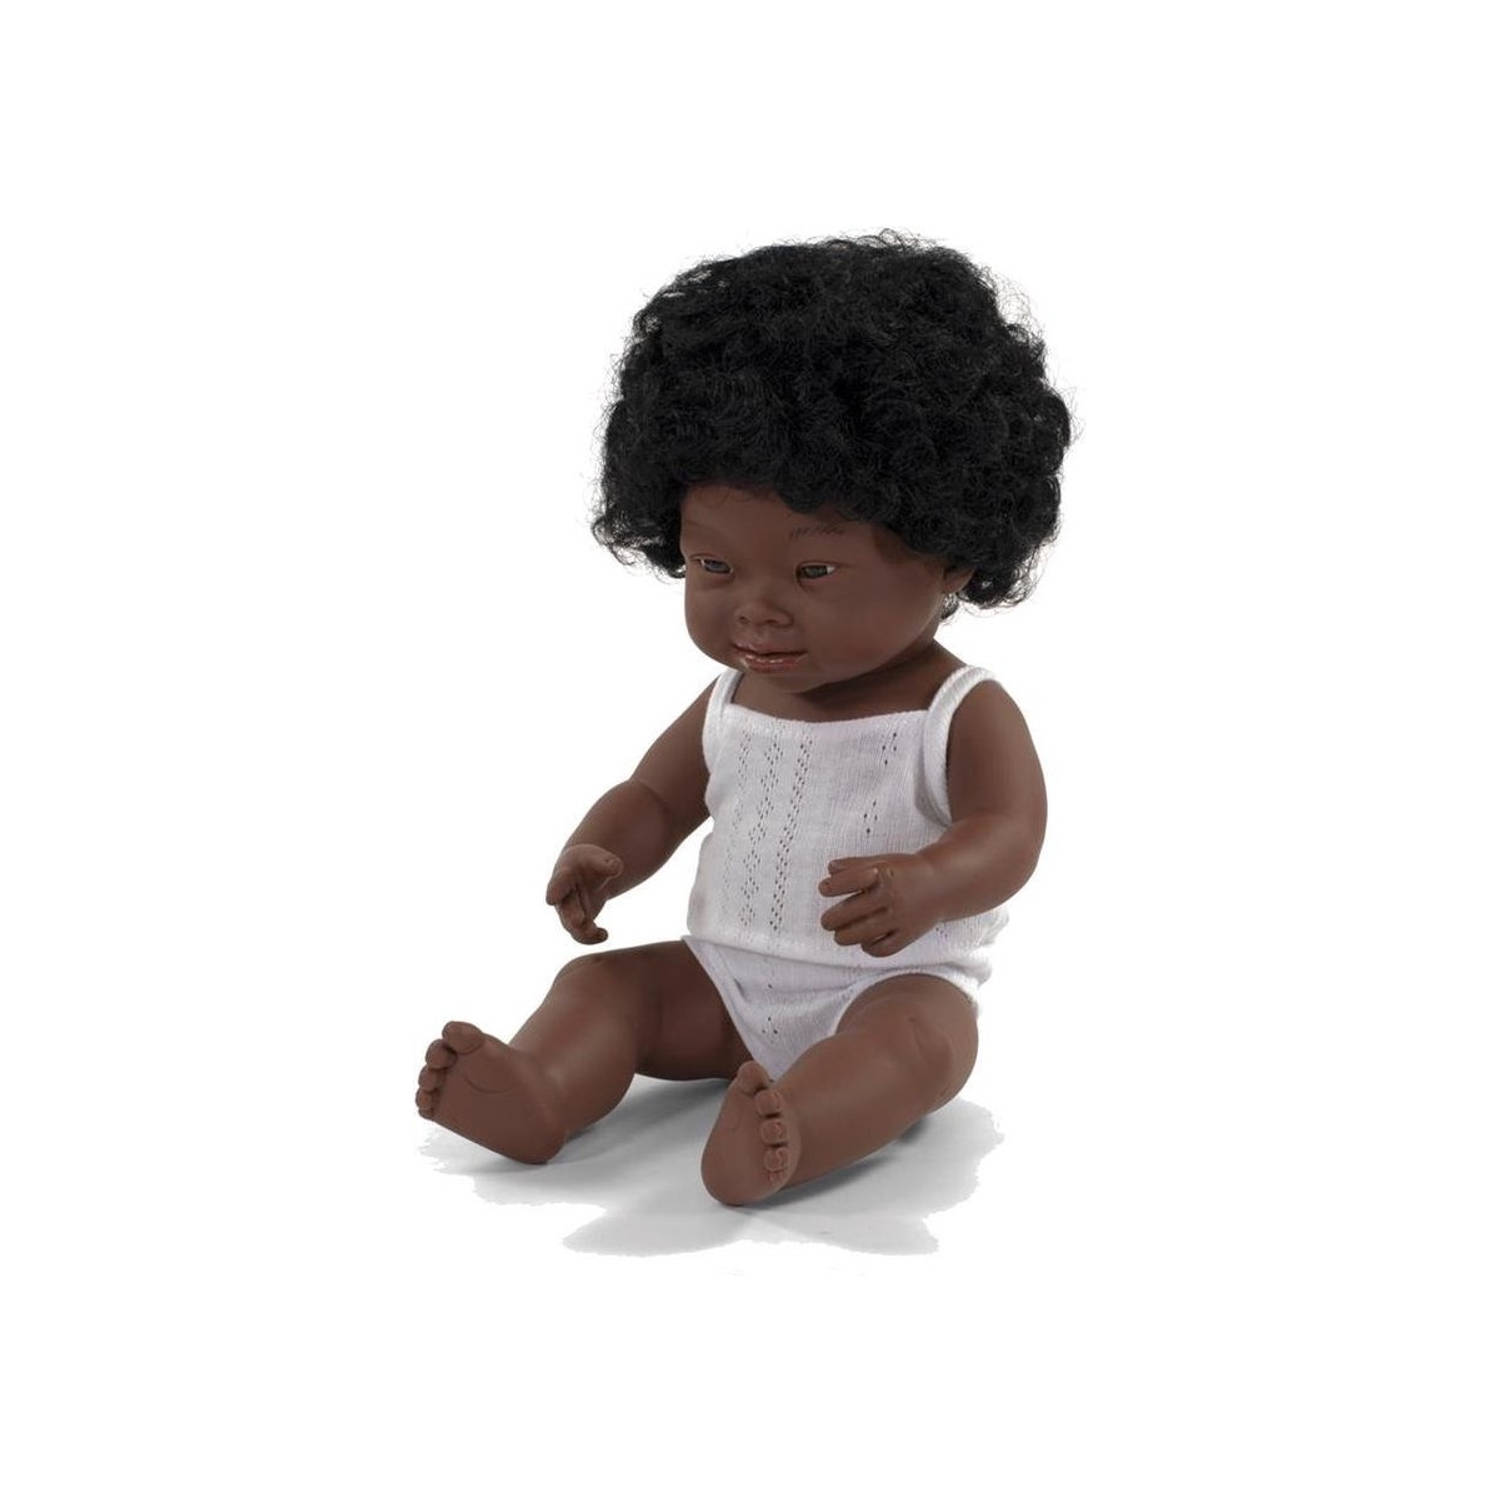 Miniland babypop meisje met vanillegeur 38 cm wit pakje